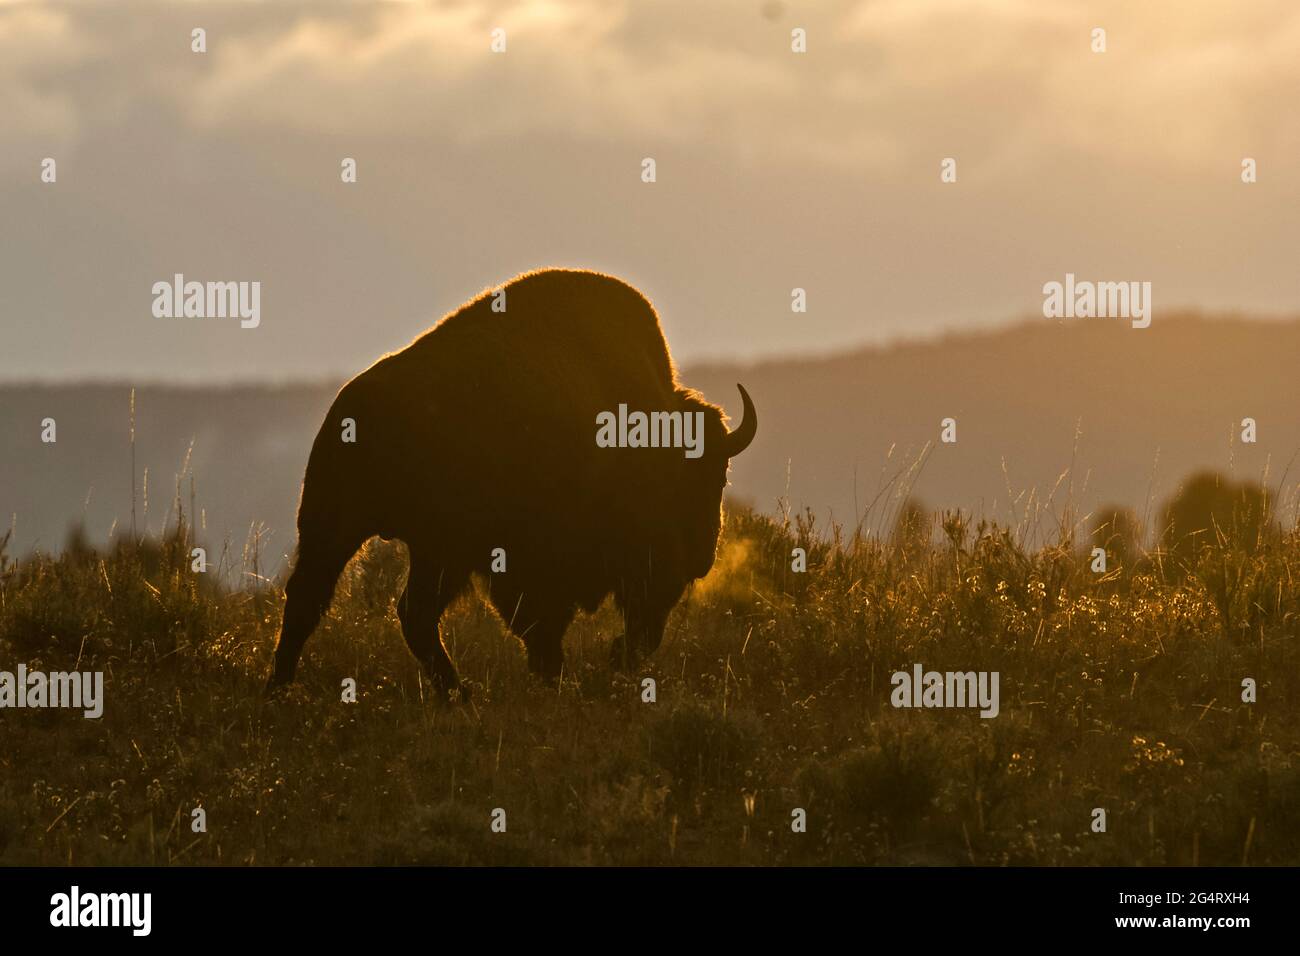 Bisonte americano (bisonte bisonte). Parco nazionale di Yellowstone, Wyoming, Stati Uniti. Parco nazionale, parchi nazionali, parchi nazionali Foto Stock